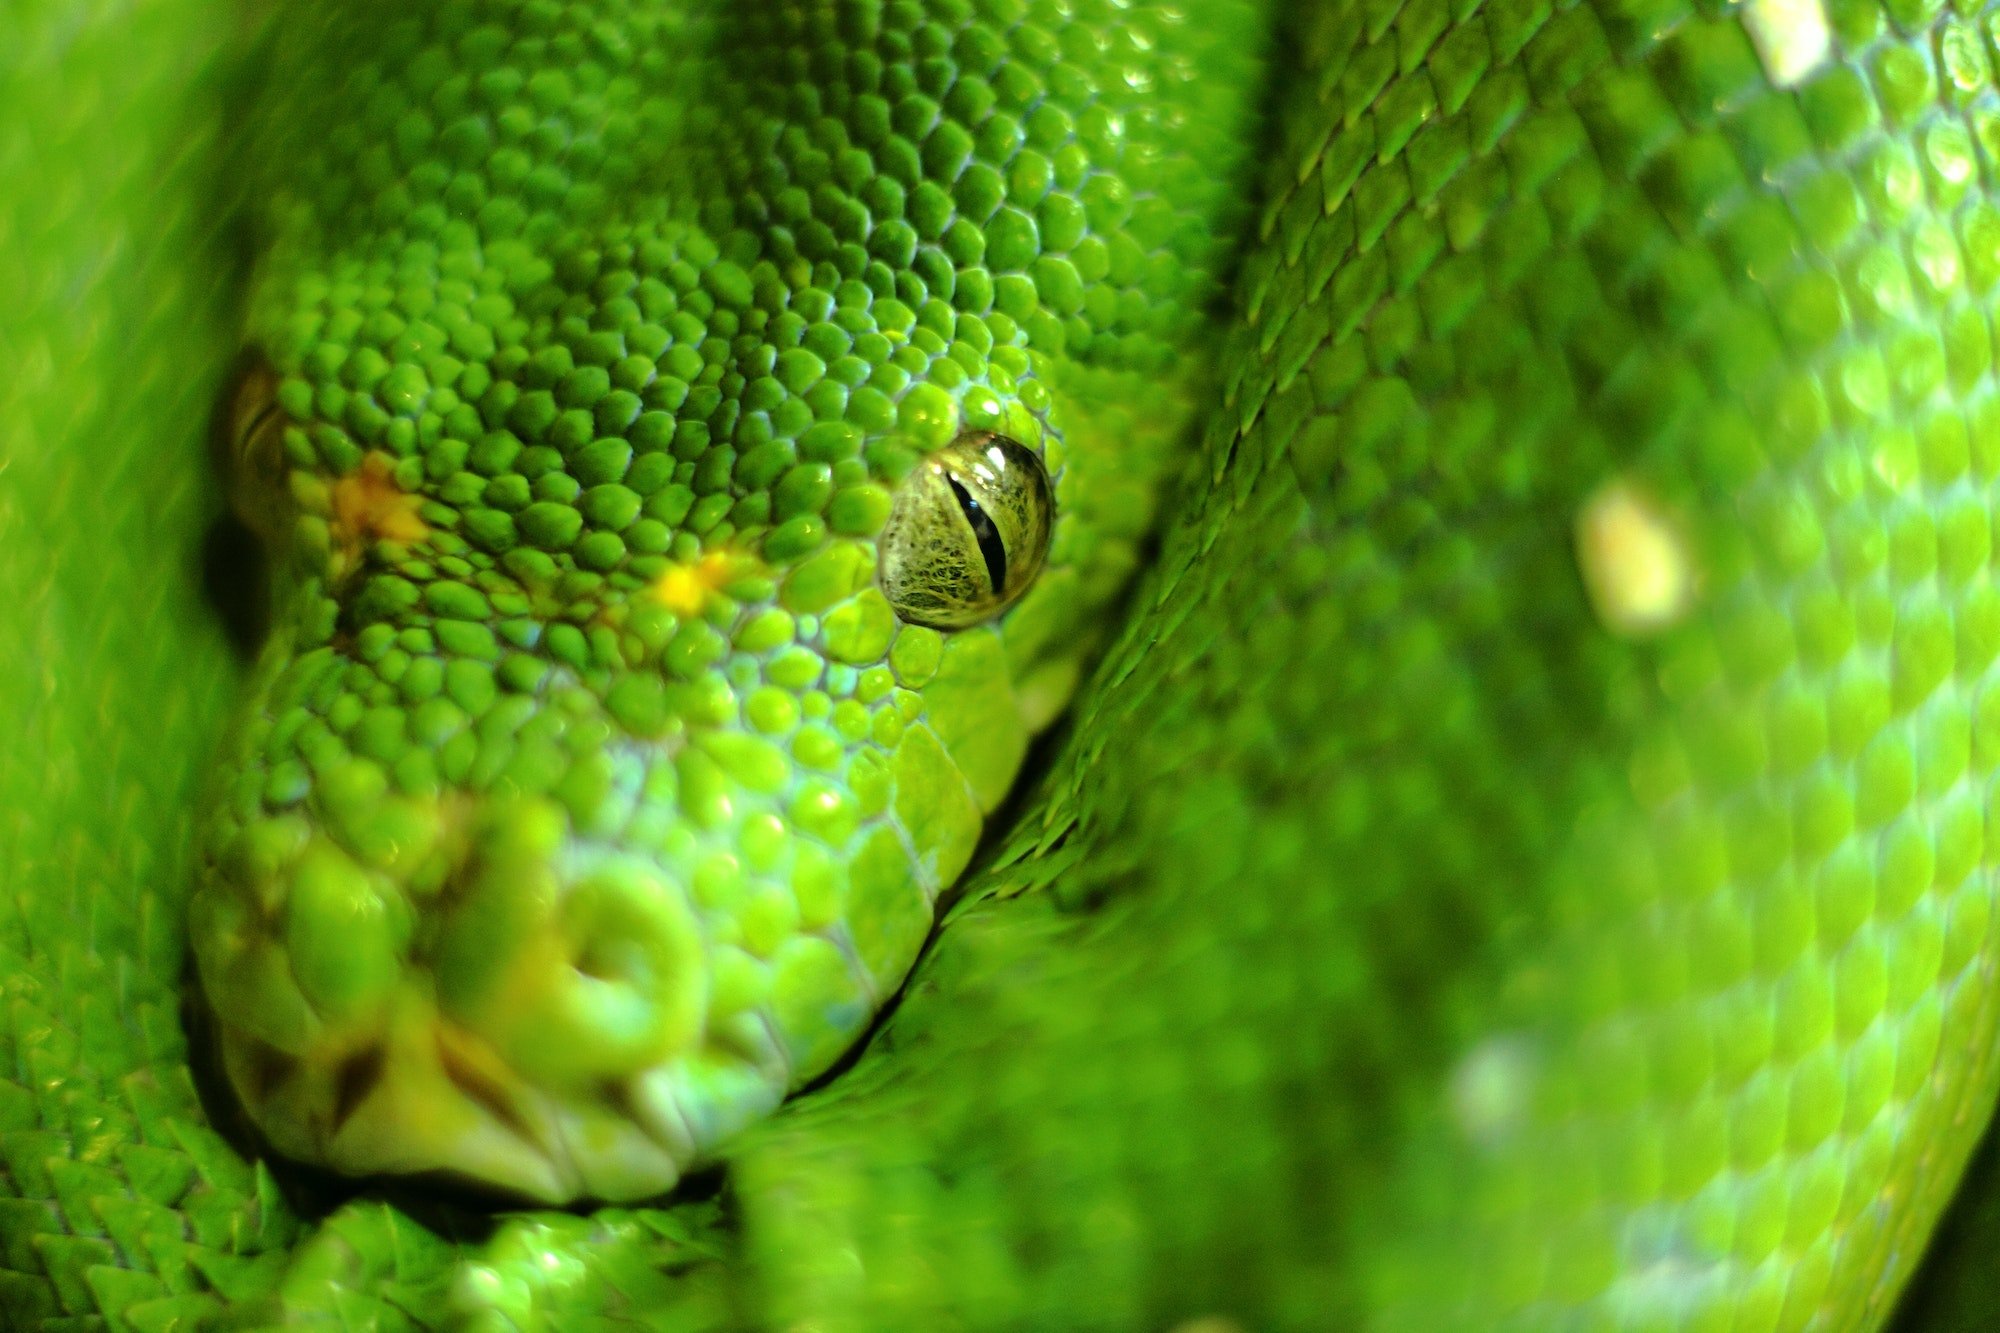 Taxonomía de las Serpientes. Foto por Envato.